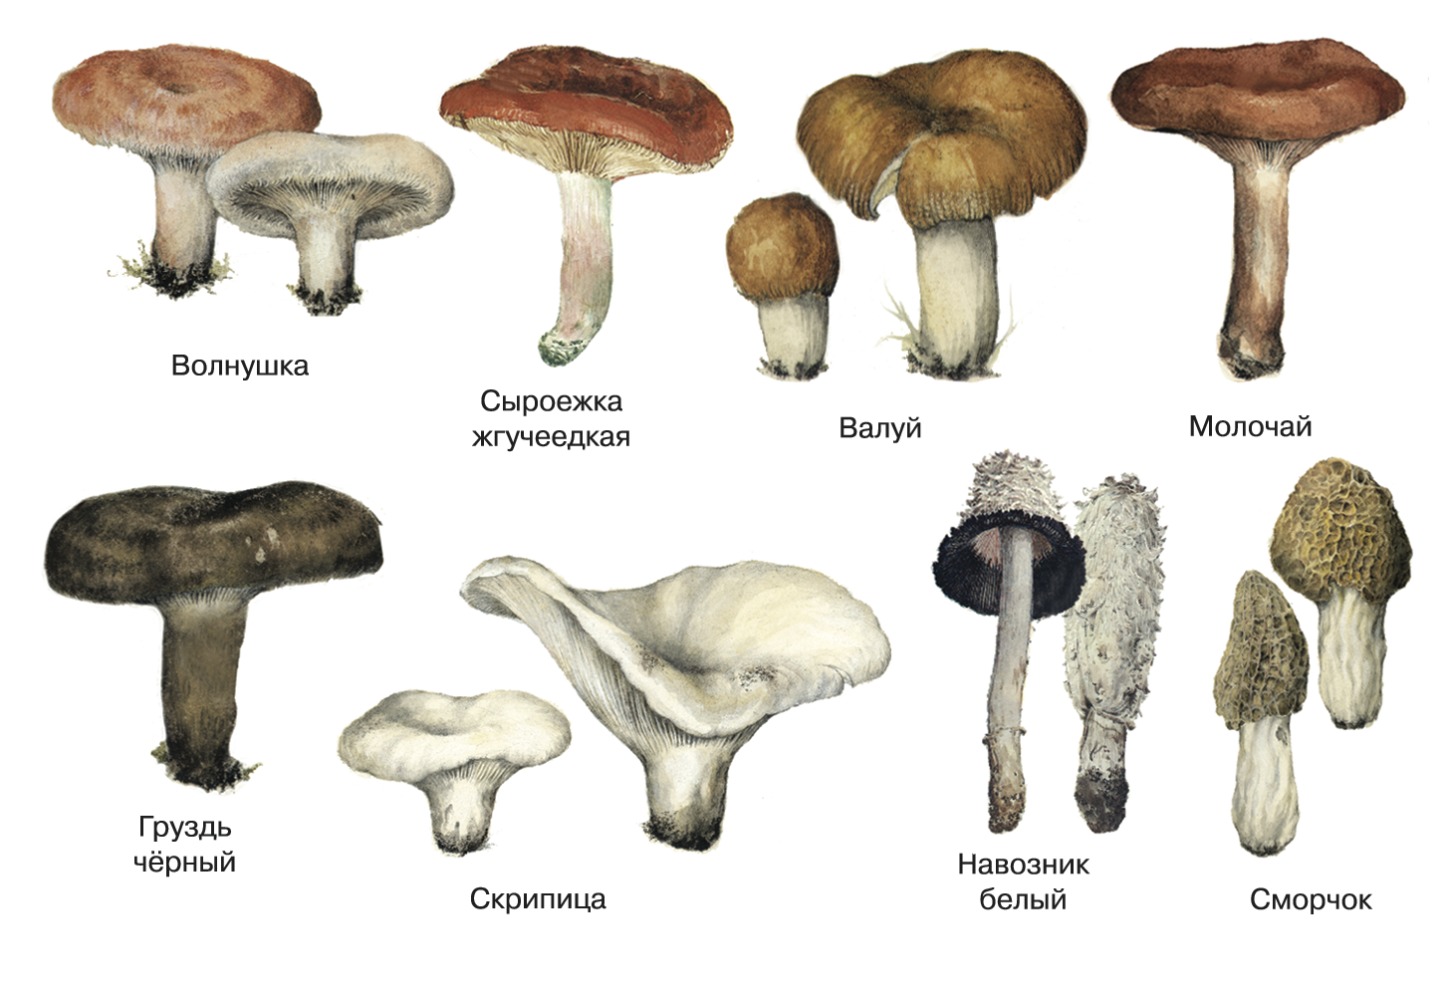 виды грибов и их названия фото